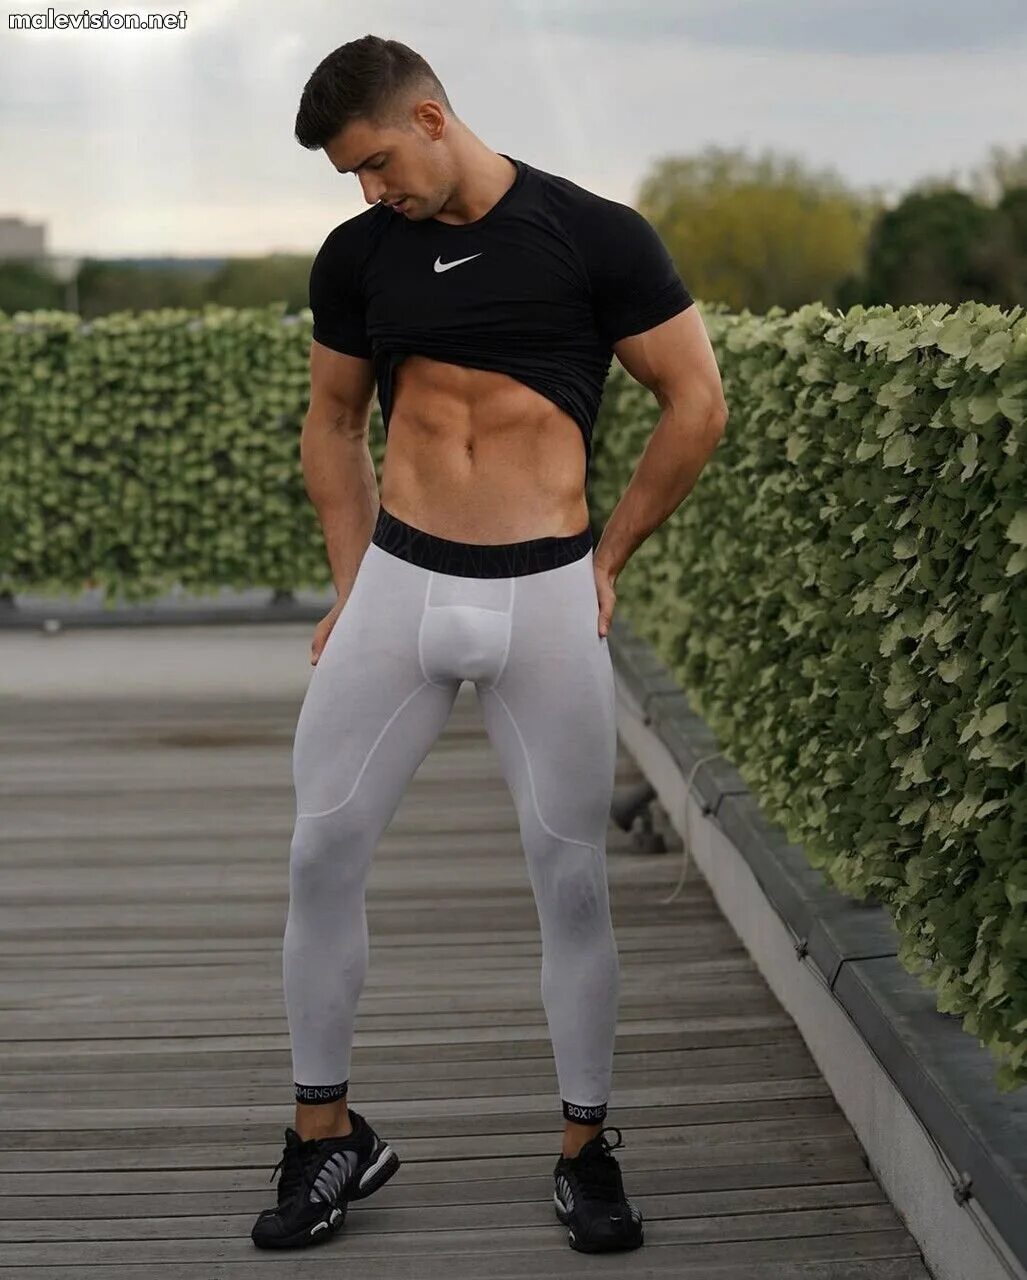 Никколо Нери. Никколо Нери модель. Обтягивающие штаны для мужчин. Спортивные штаны в обтяжку. Мужики в обтягивающем